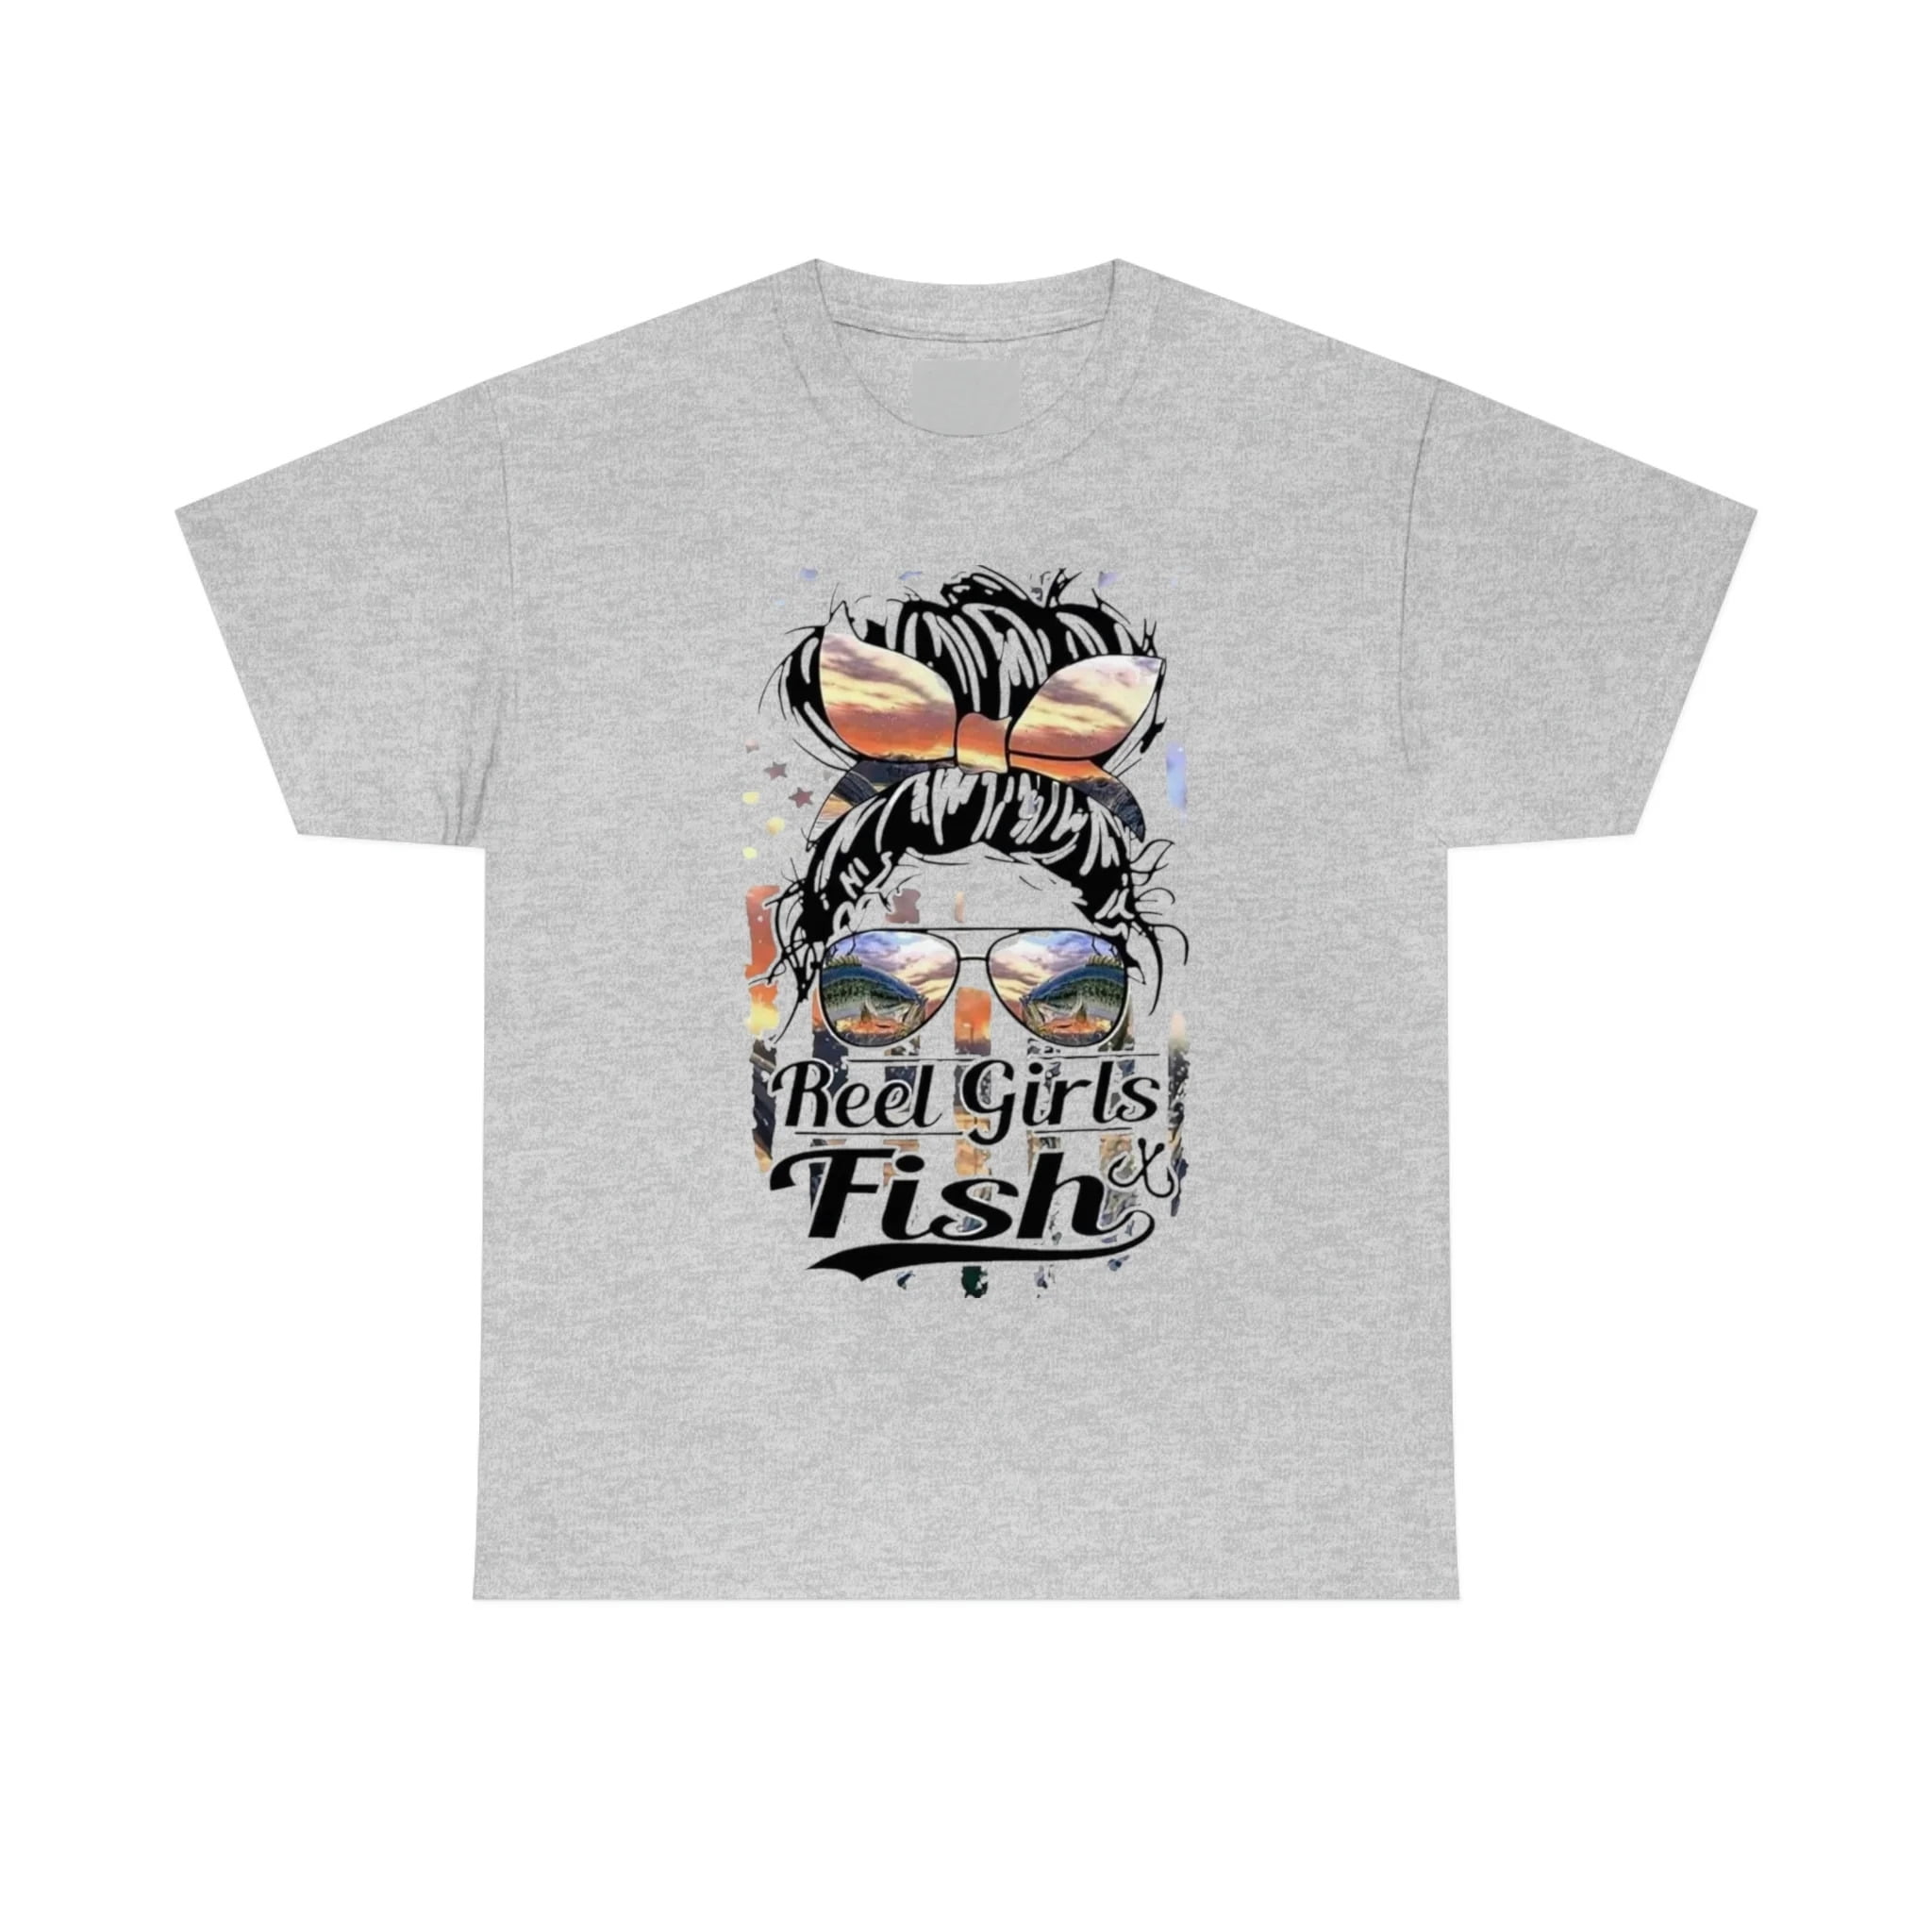 Reel Girls Fish, Fishing Tshirt, Country Tshirt, Woman Shirt, Unisex Heavy  Cotton Tee 